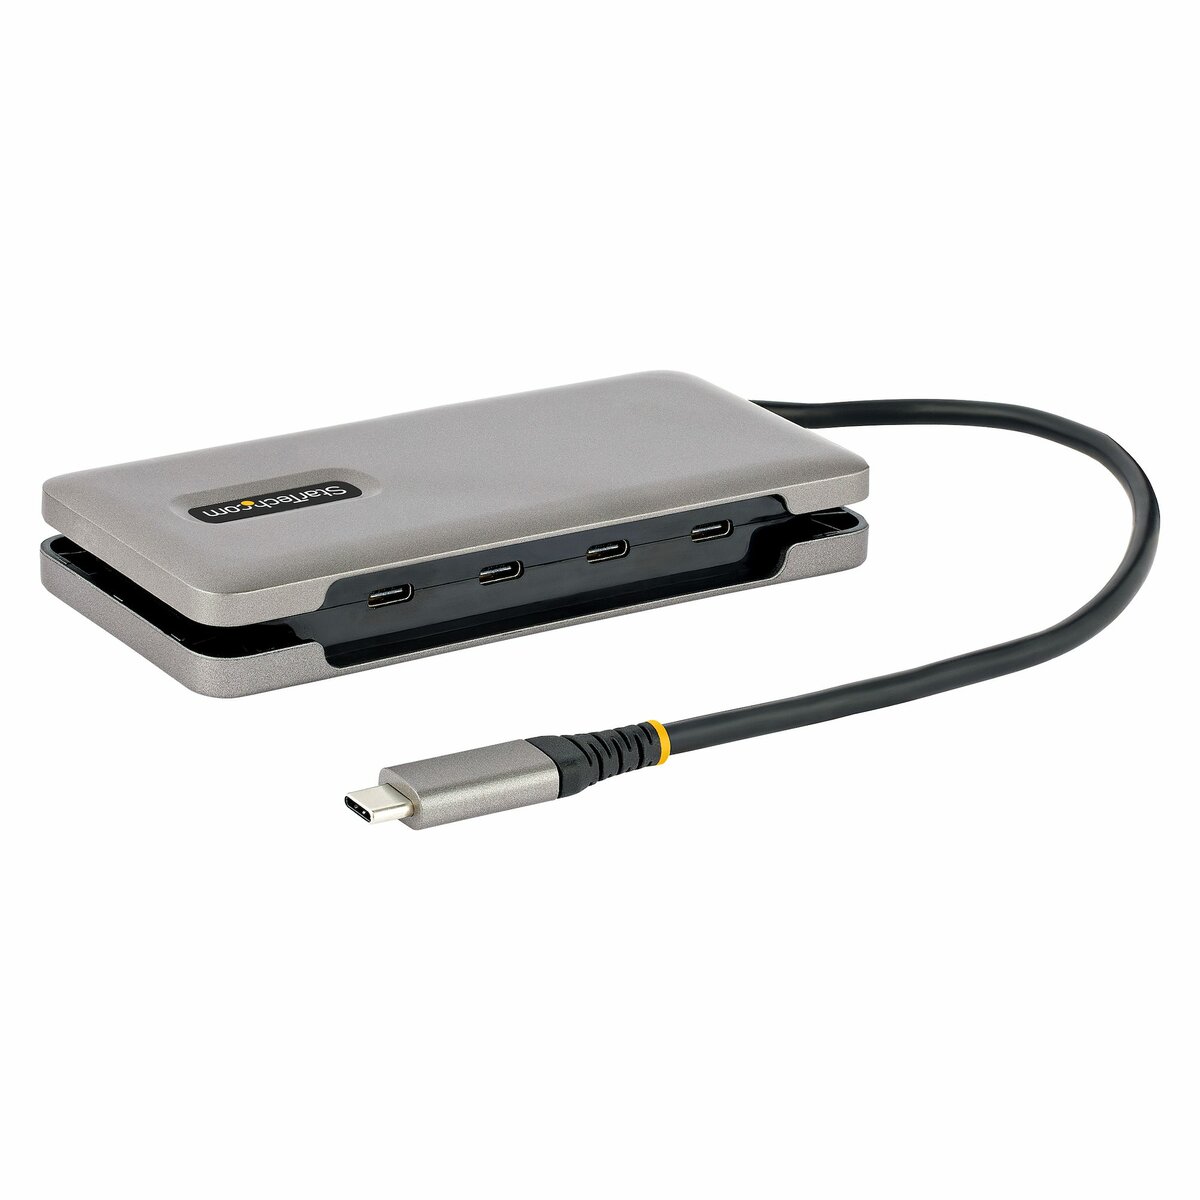 Concentrateur portable multiport USB 3.0 2.0 7 ports de type C